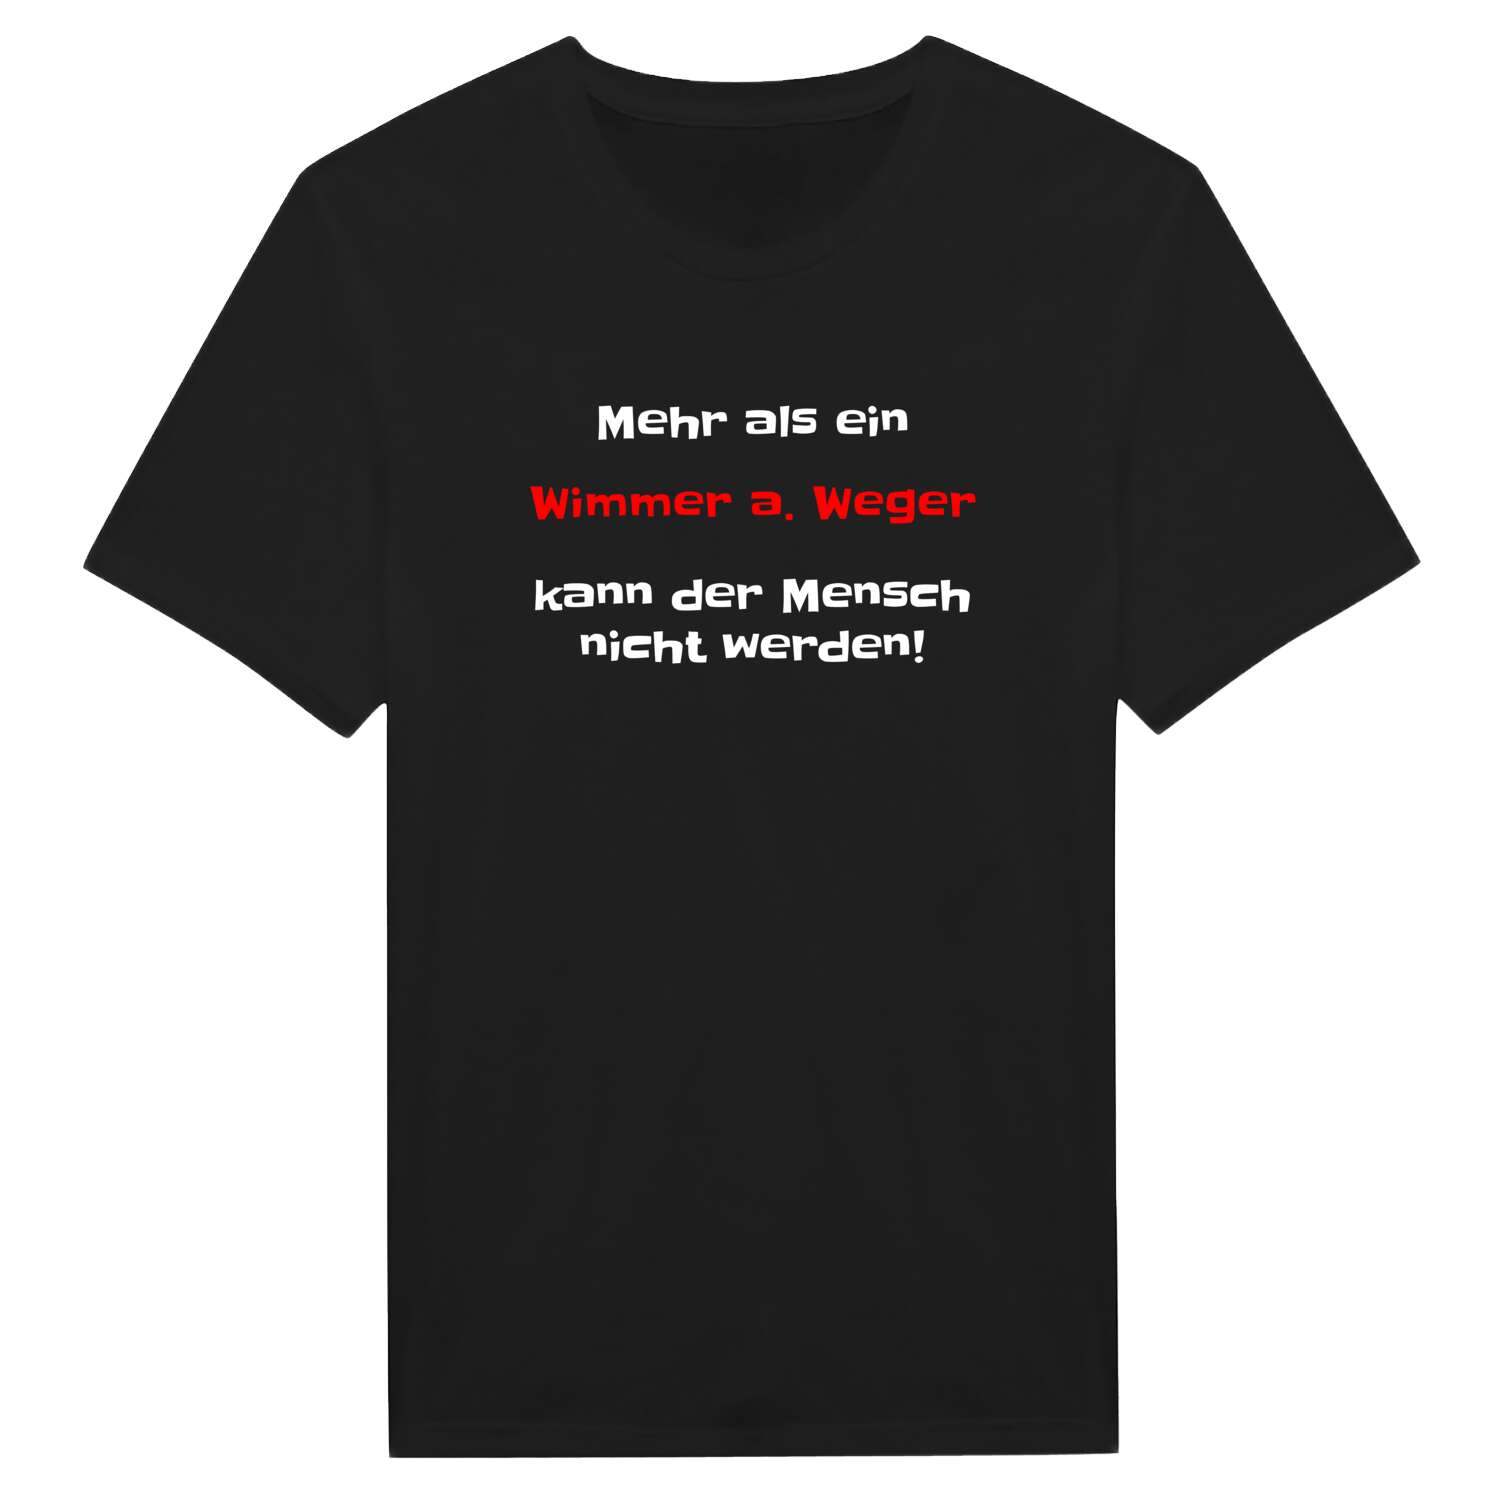 Wimmer a. Weg T-Shirt »Mehr als ein«